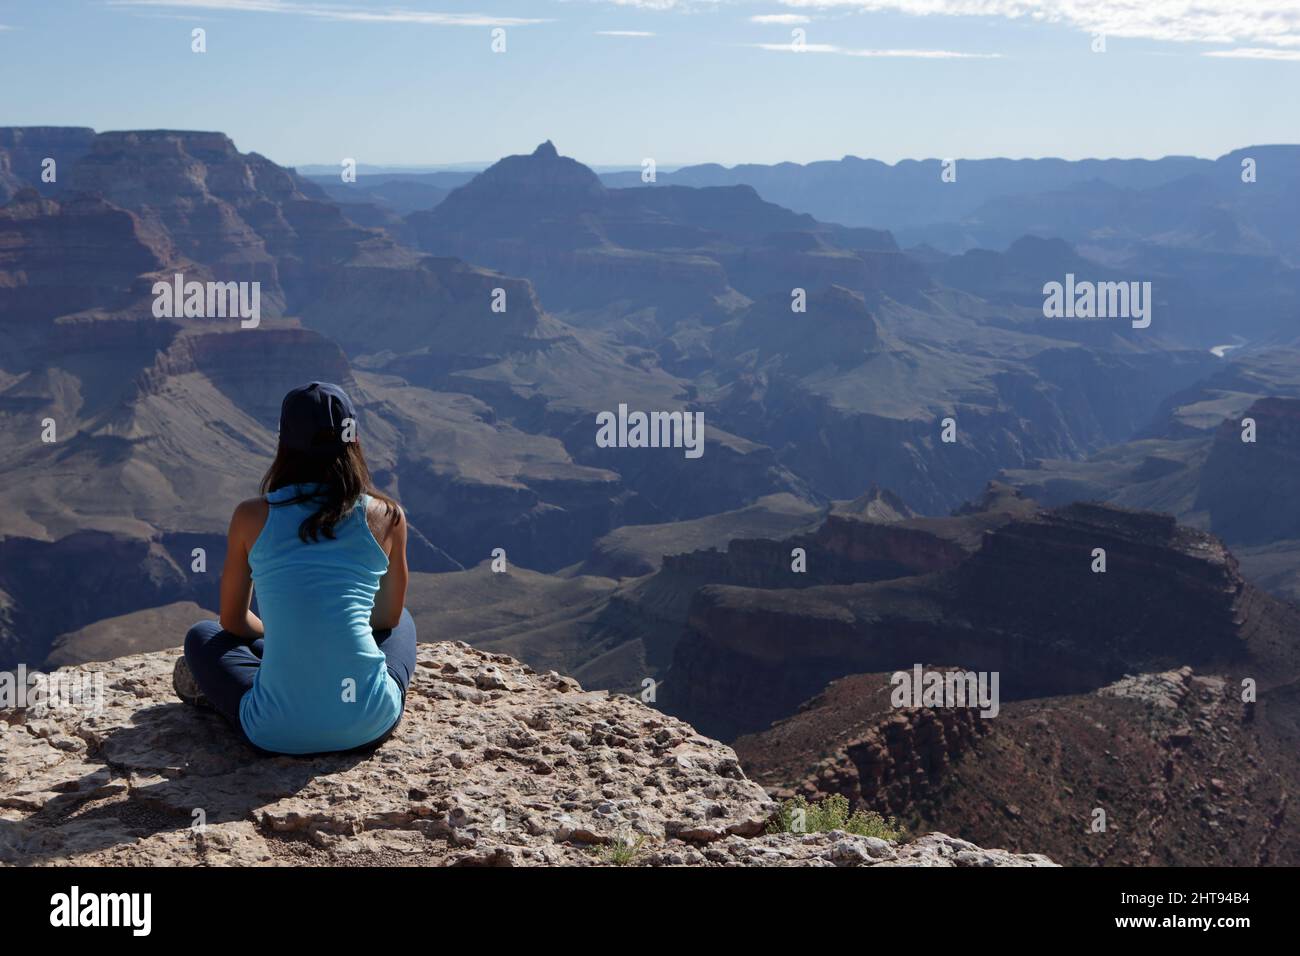 Una ragazza si siede a gambe incrociate e guarda la vista di scogliere, buttes, e strati di roccia, nelle profondità del Grand Canyon a Shoshone Point sul Sou Foto Stock